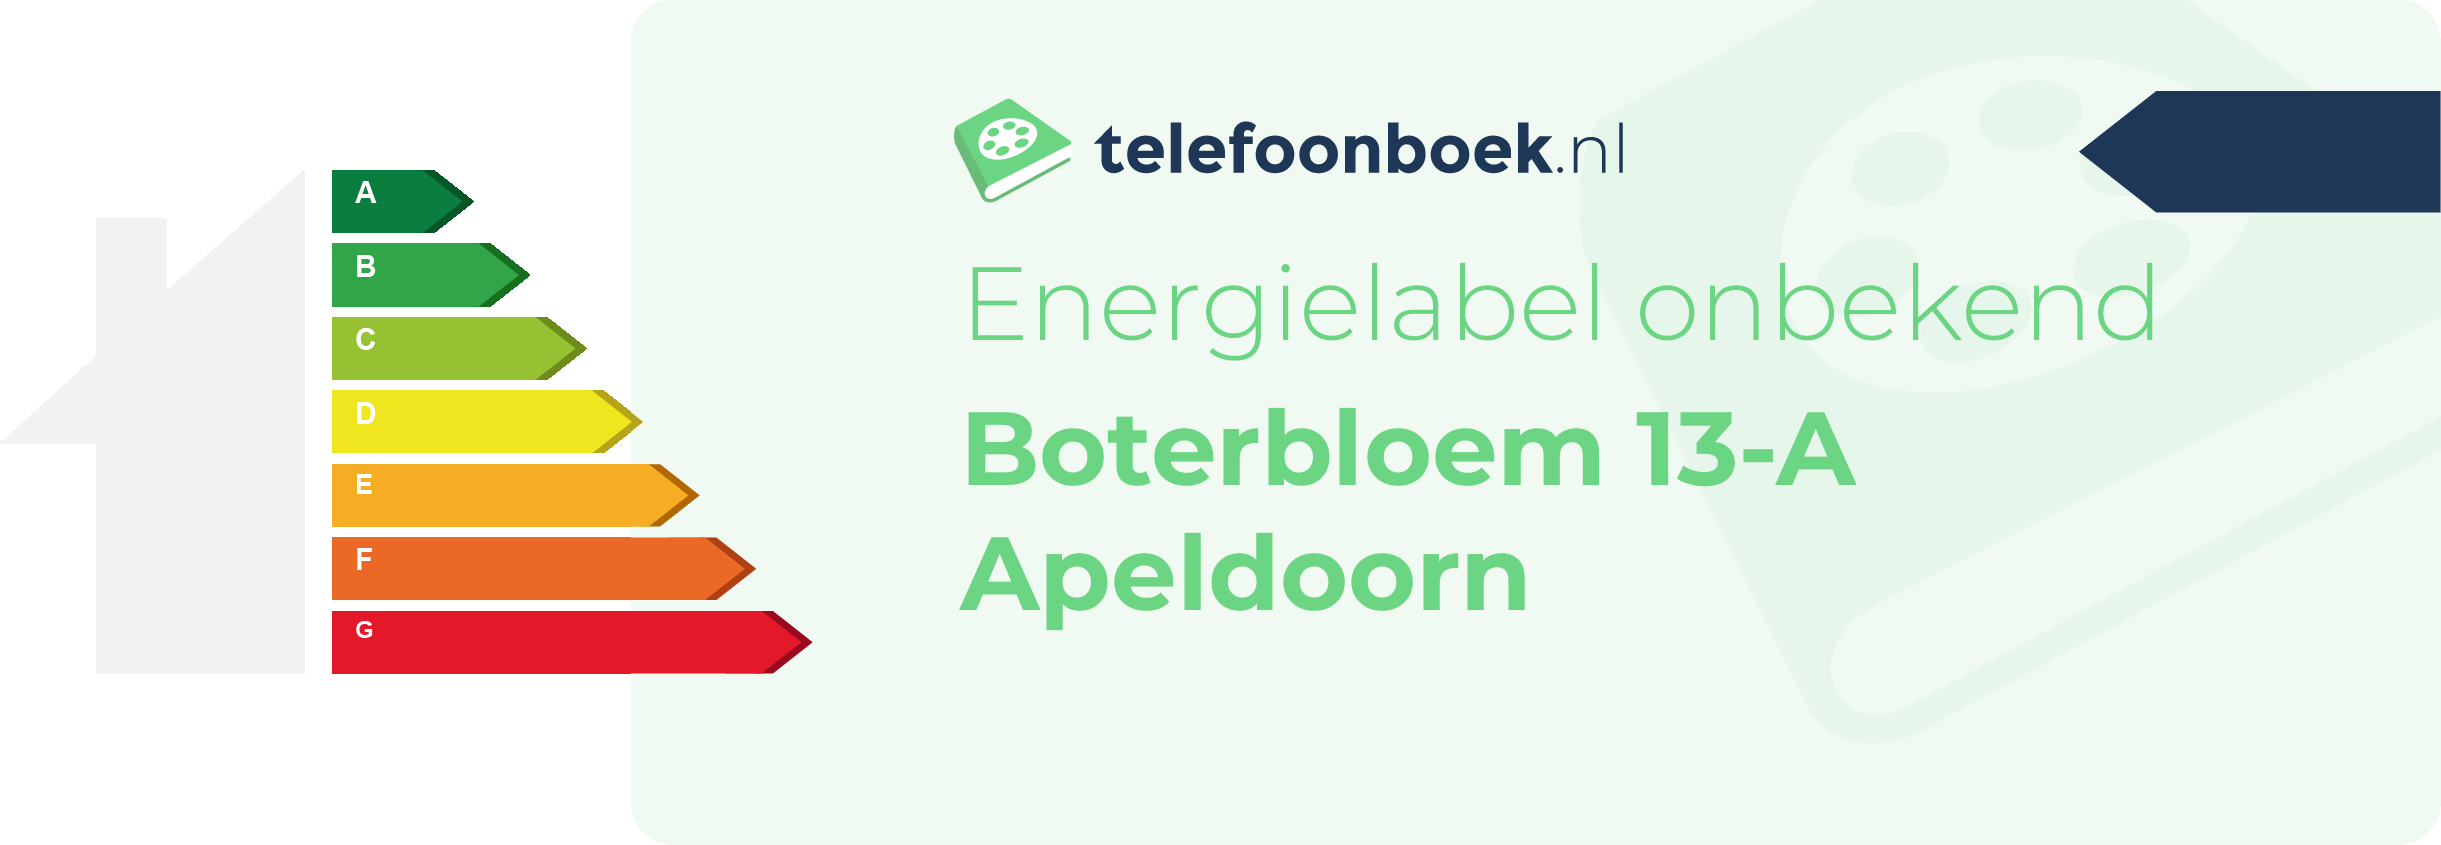 Energielabel Boterbloem 13-A Apeldoorn